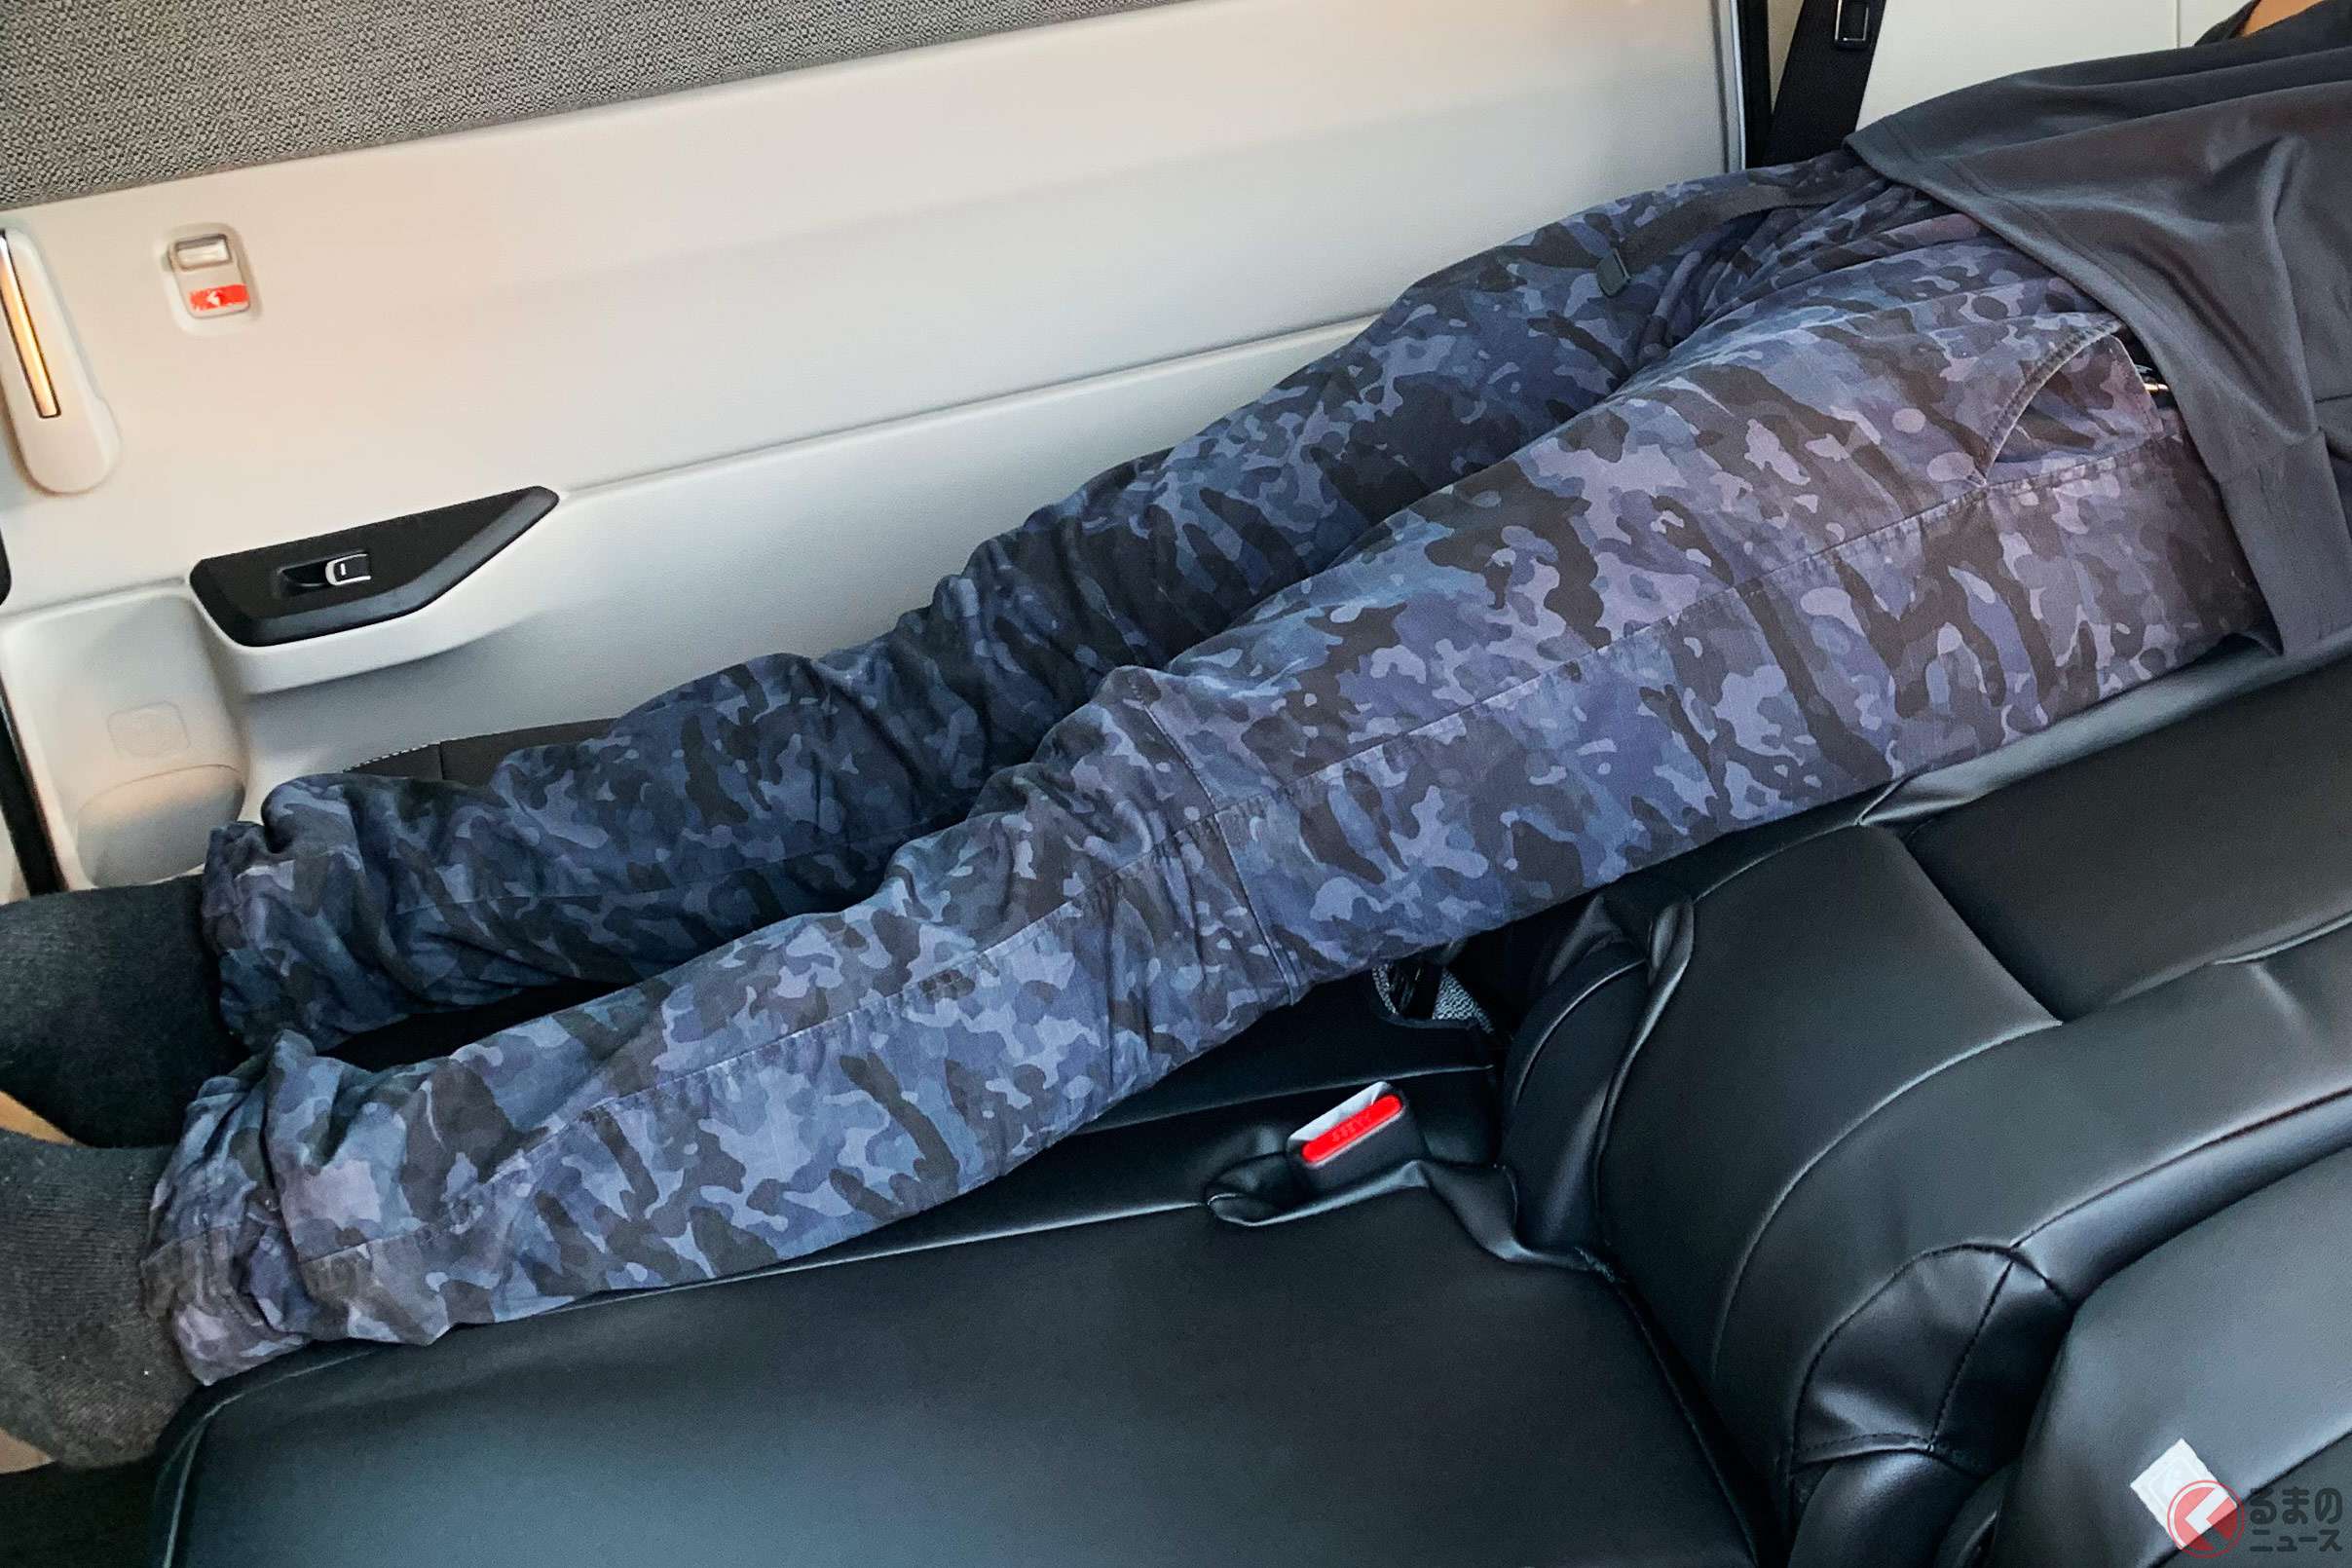 たぶん世界で初めて？ 新型ステップワゴンの車中泊仕様で寝転んでみた！ ステキなシアター空間に感動！（画像は寝転んだイメージ）